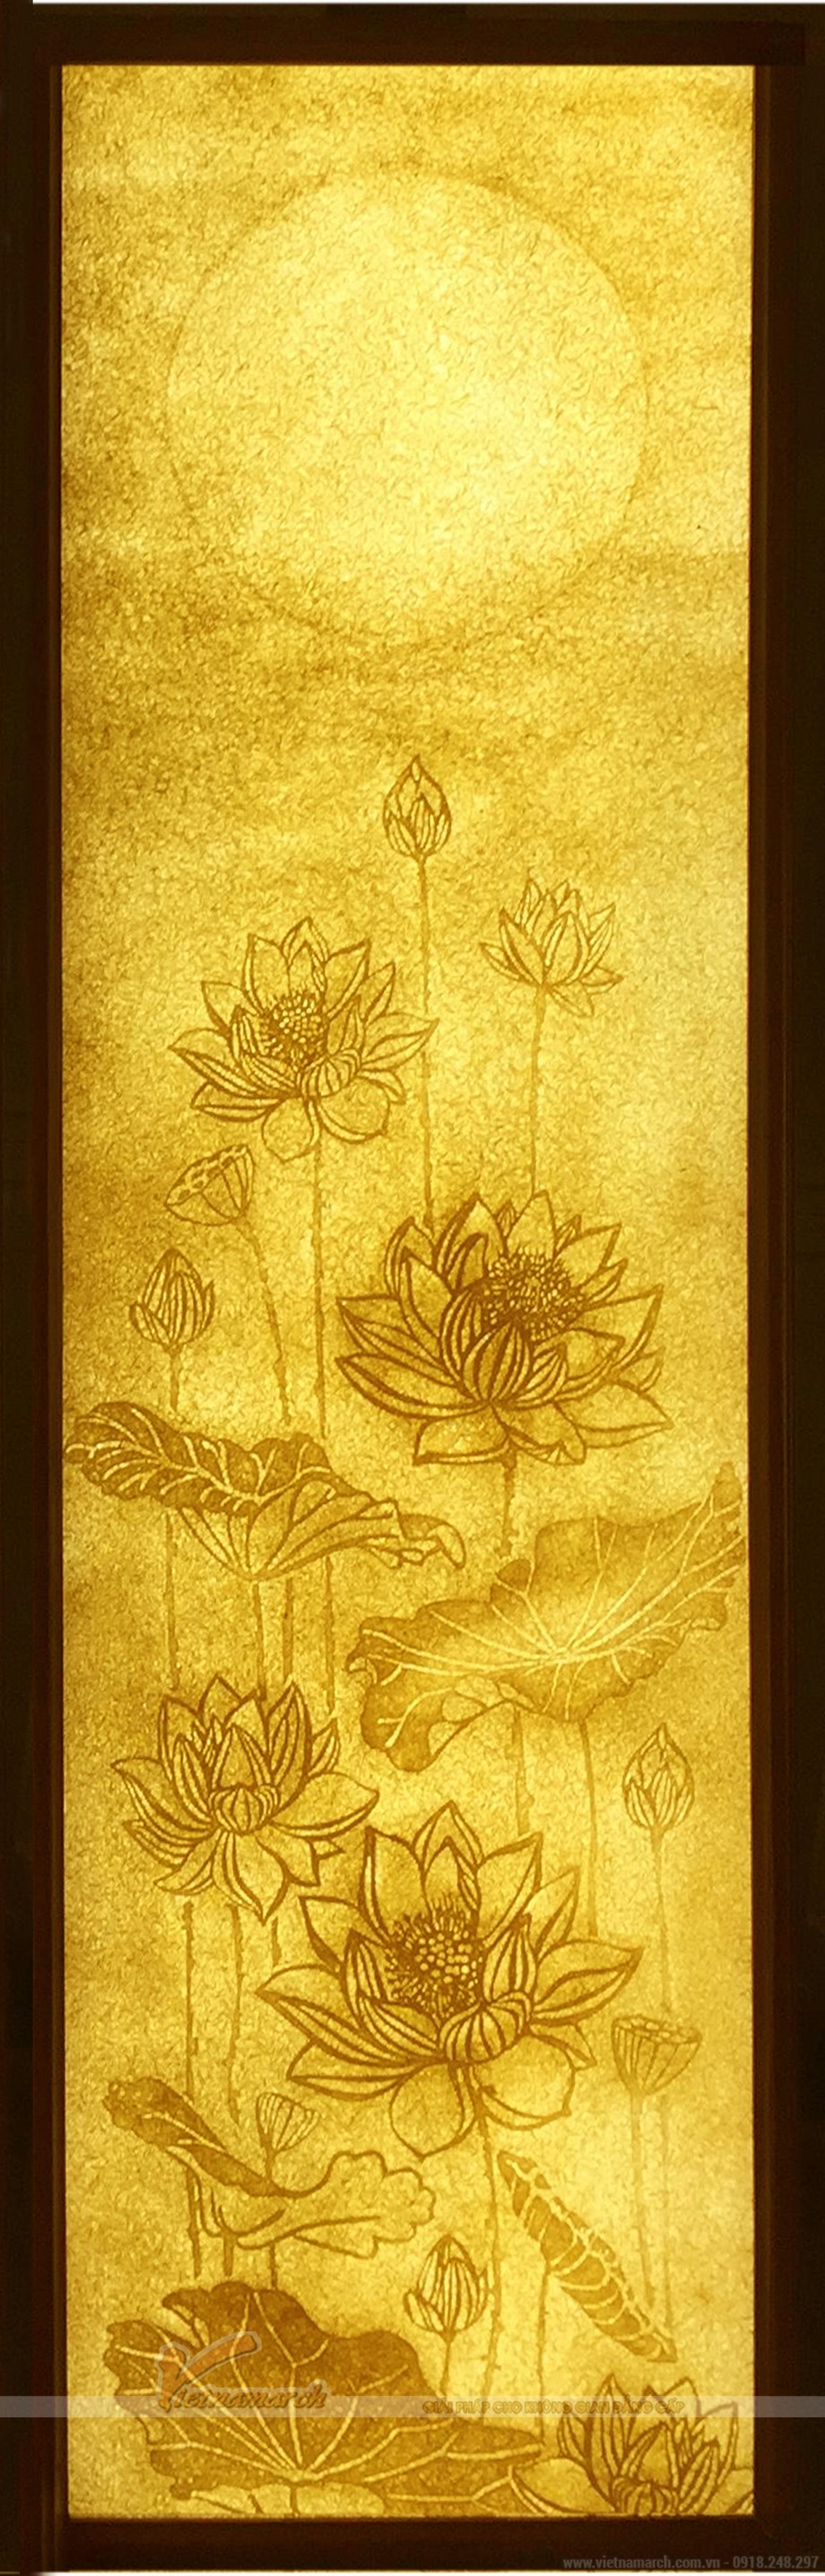 Bộ sưu tập tranh giấy dừa hoa sen cho không gian phòng thờ > Bộ sưu tập tranh giấy dừa hoa sen cho không gian phòng thờ